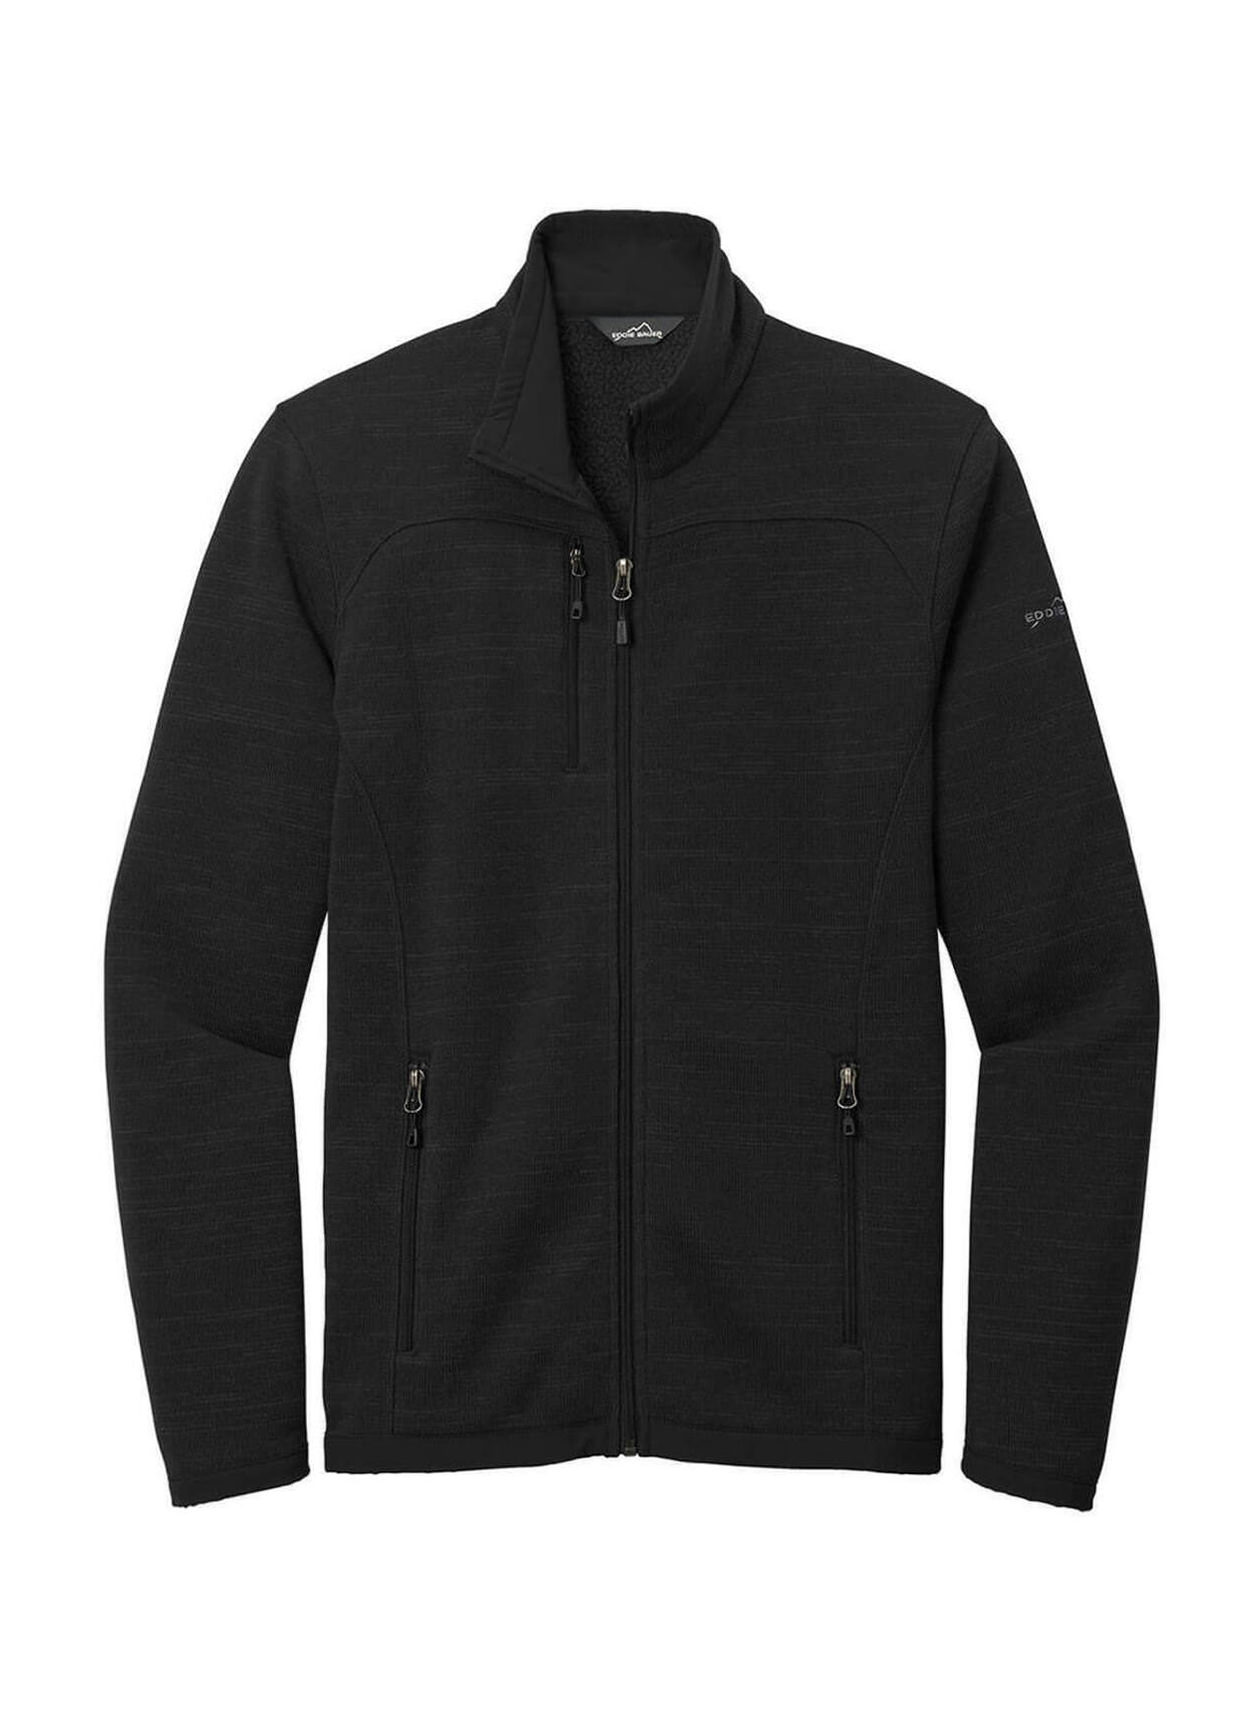 Eddie Bauer Black Men's Sweater Fleece Jacket EB250